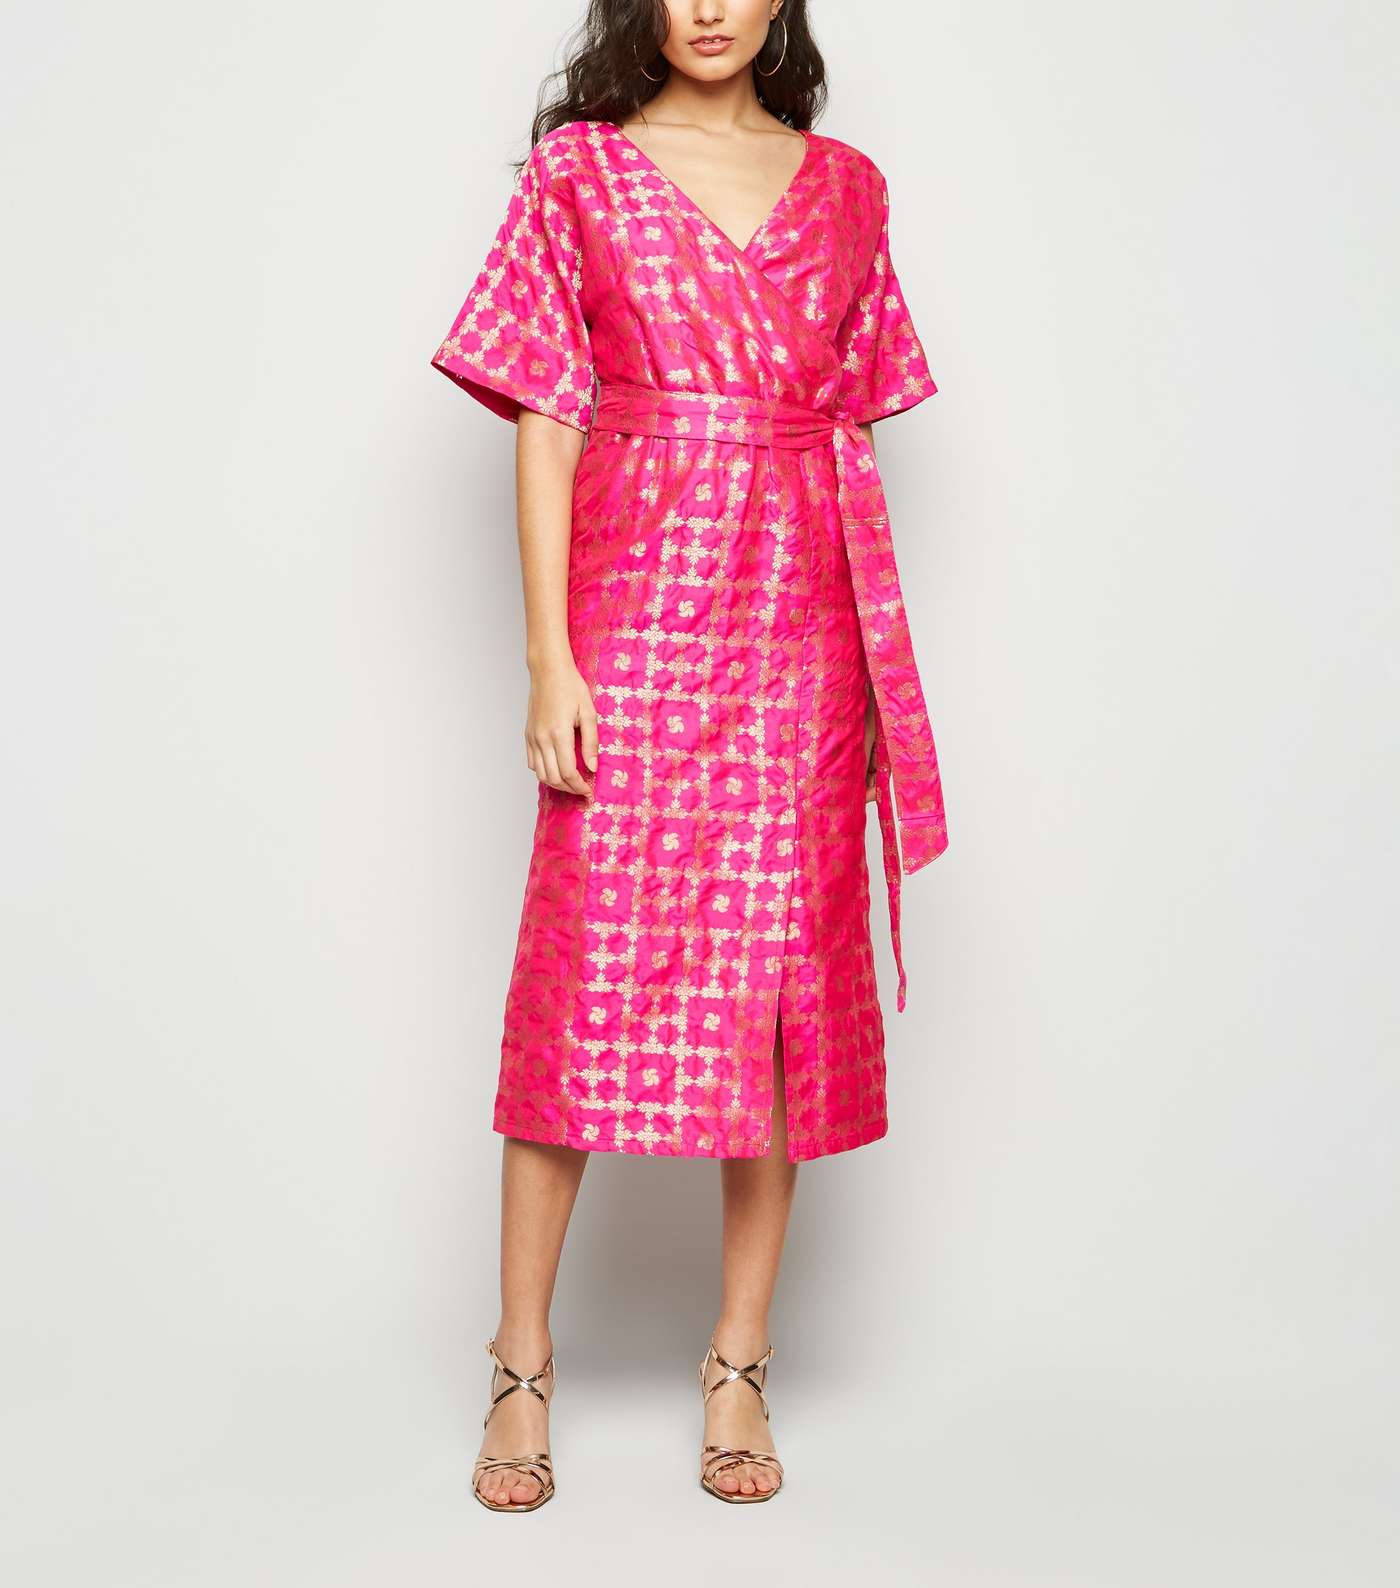 Nesavaali Bright Pink Metallic Jacquard Midi Dress